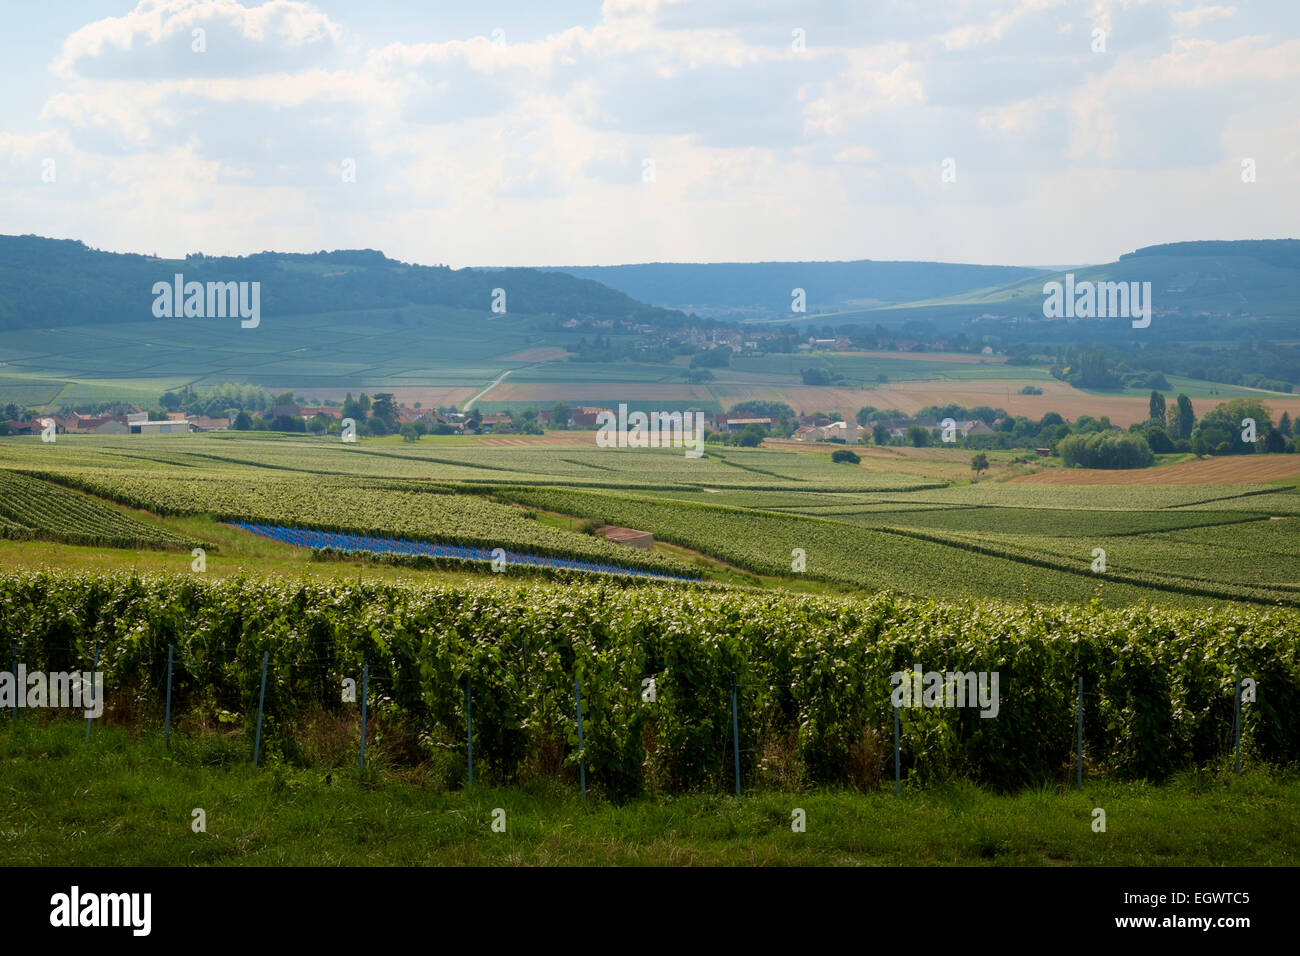 Vista del paisaje de viñedos y pueblos en la región de Champagne, Francia, Europa Foto de stock